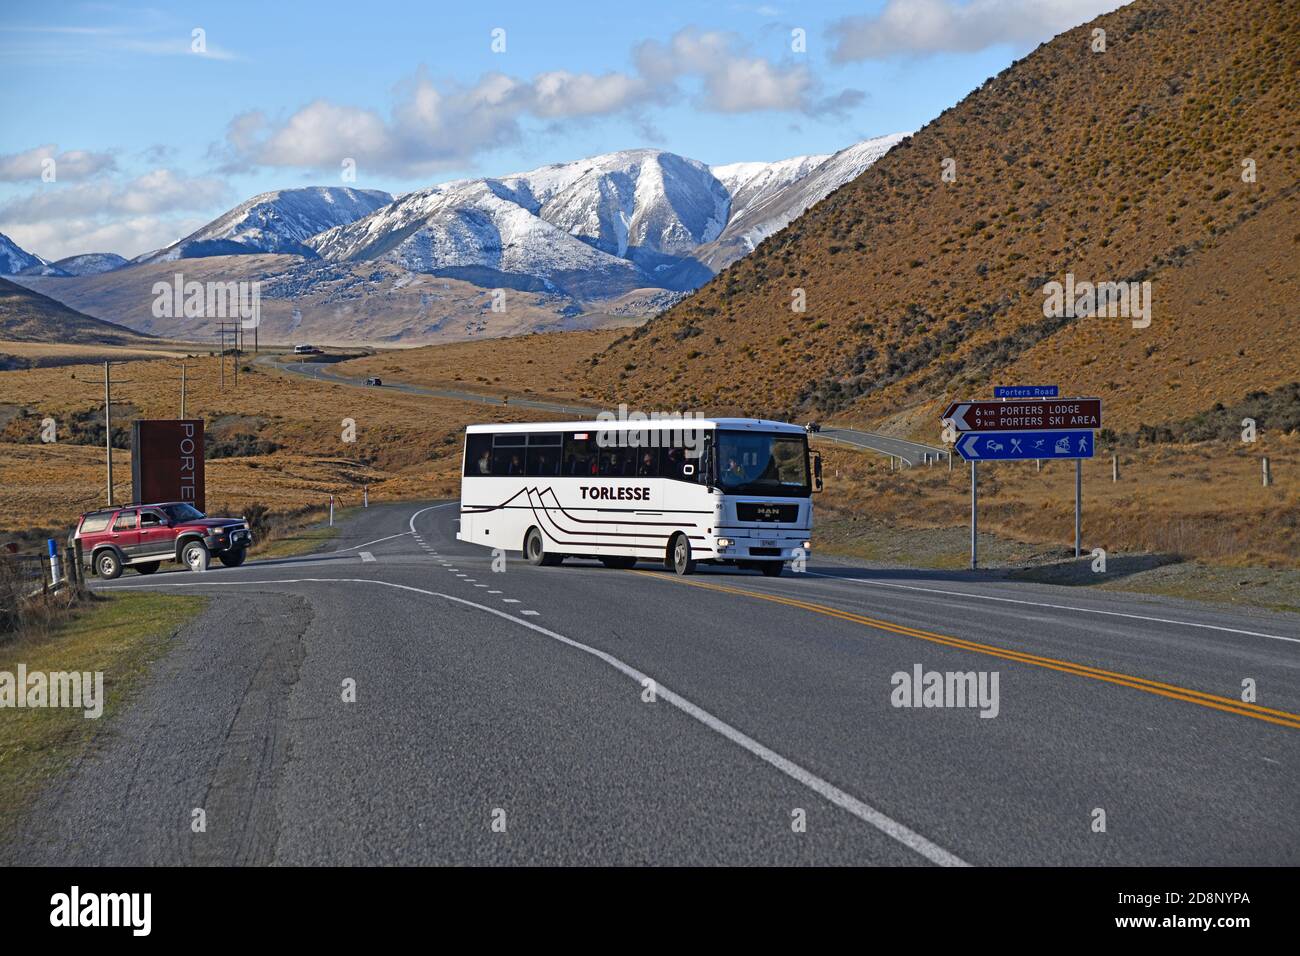 PORTERS PASS, NUEVA ZELANDA, 20 DE SEPTIEMBRE de 2020: Un autobús turístico se convierte en la carretera estatal 73 después de salir de la carretera al campo de esquí de Porters Pass Foto de stock